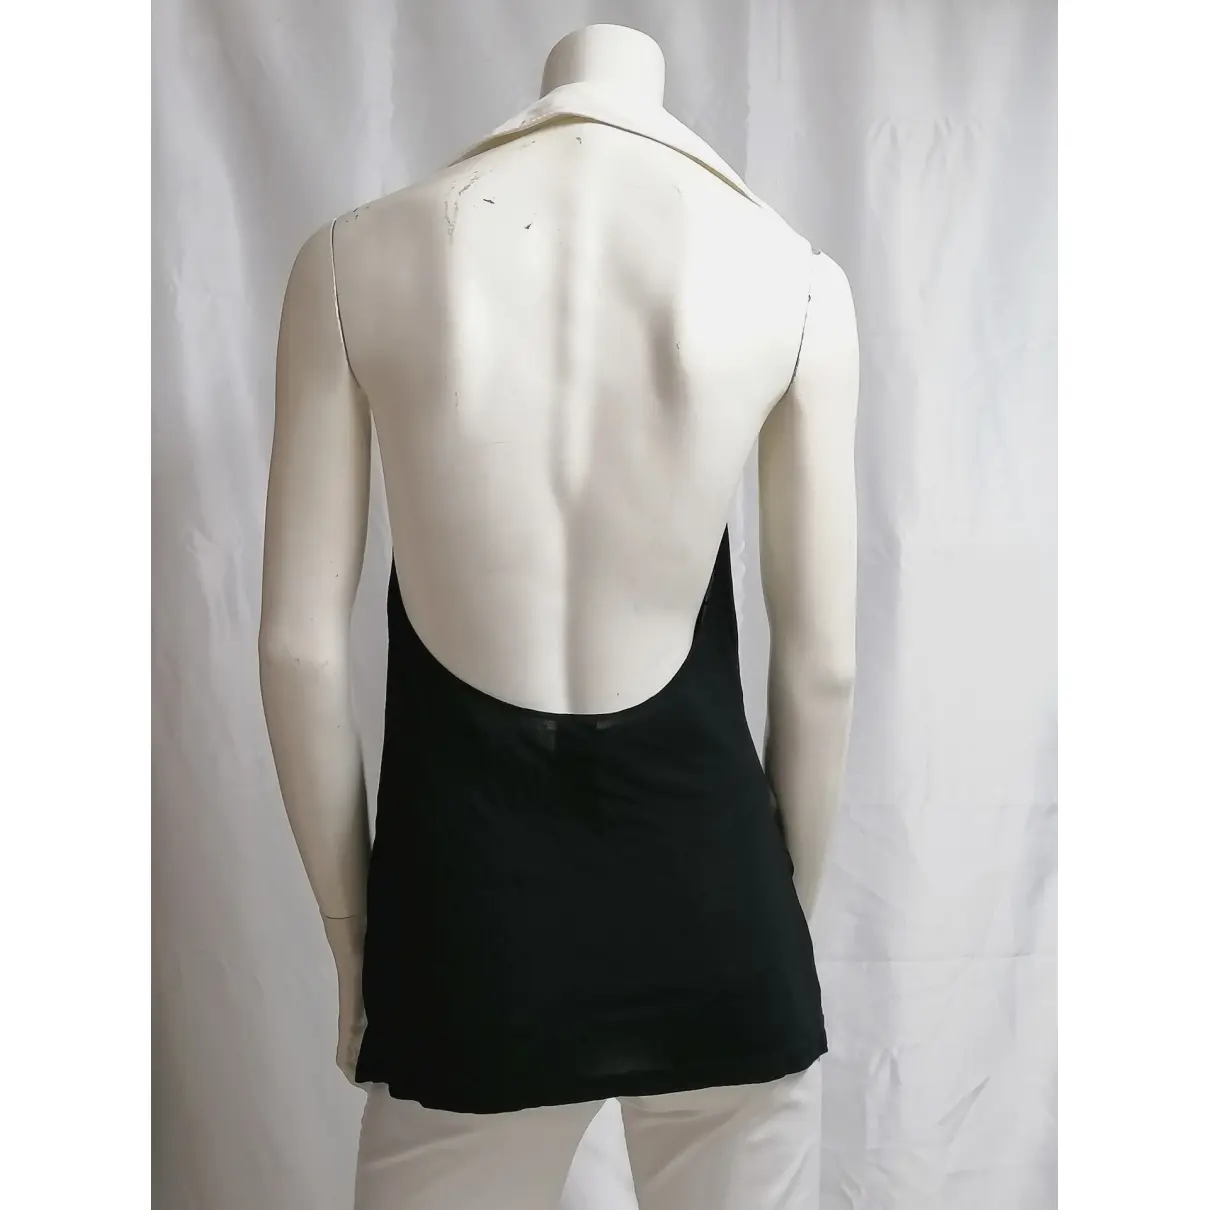 Buy Jean Paul Gaultier Vest online - Vintage